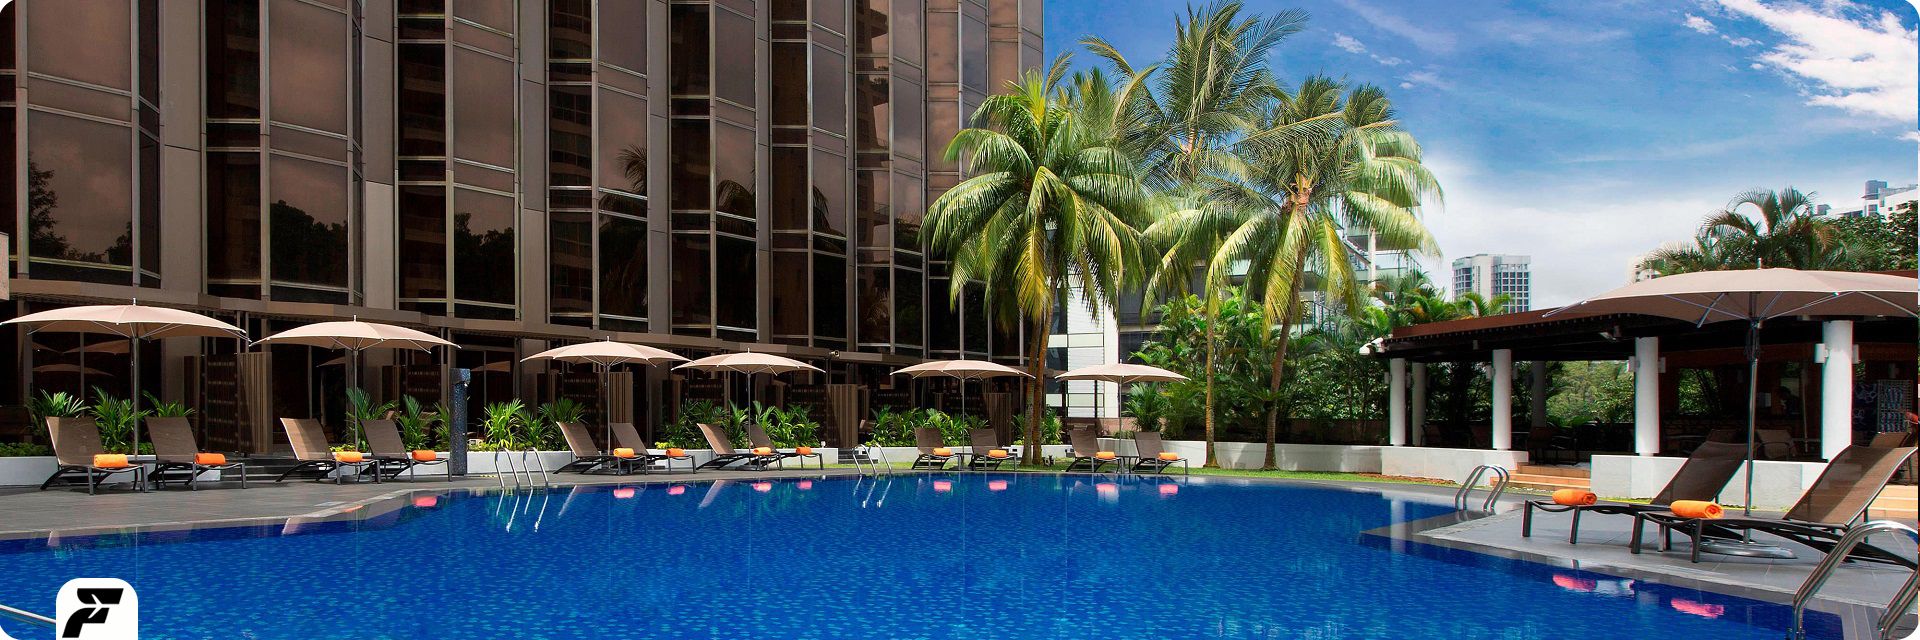 بهترین قیمت هتل های سنگاپور